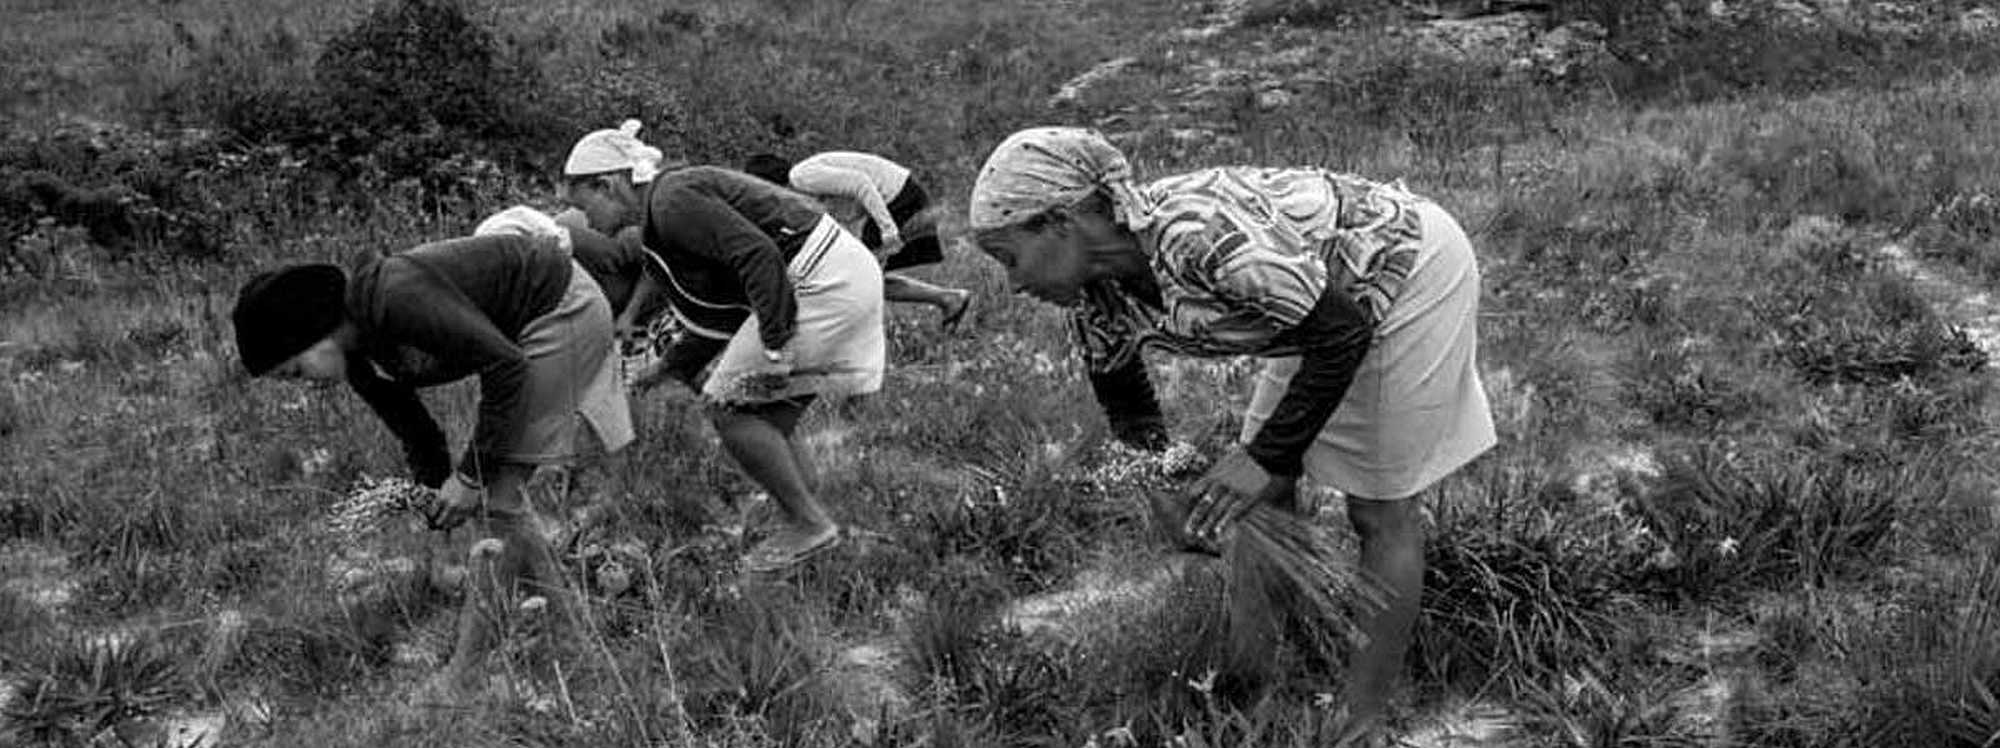 The flower gatherers of the Serra do Espinhaço in Minas Gerais state, Brazil. Image: João Roberto Ripper